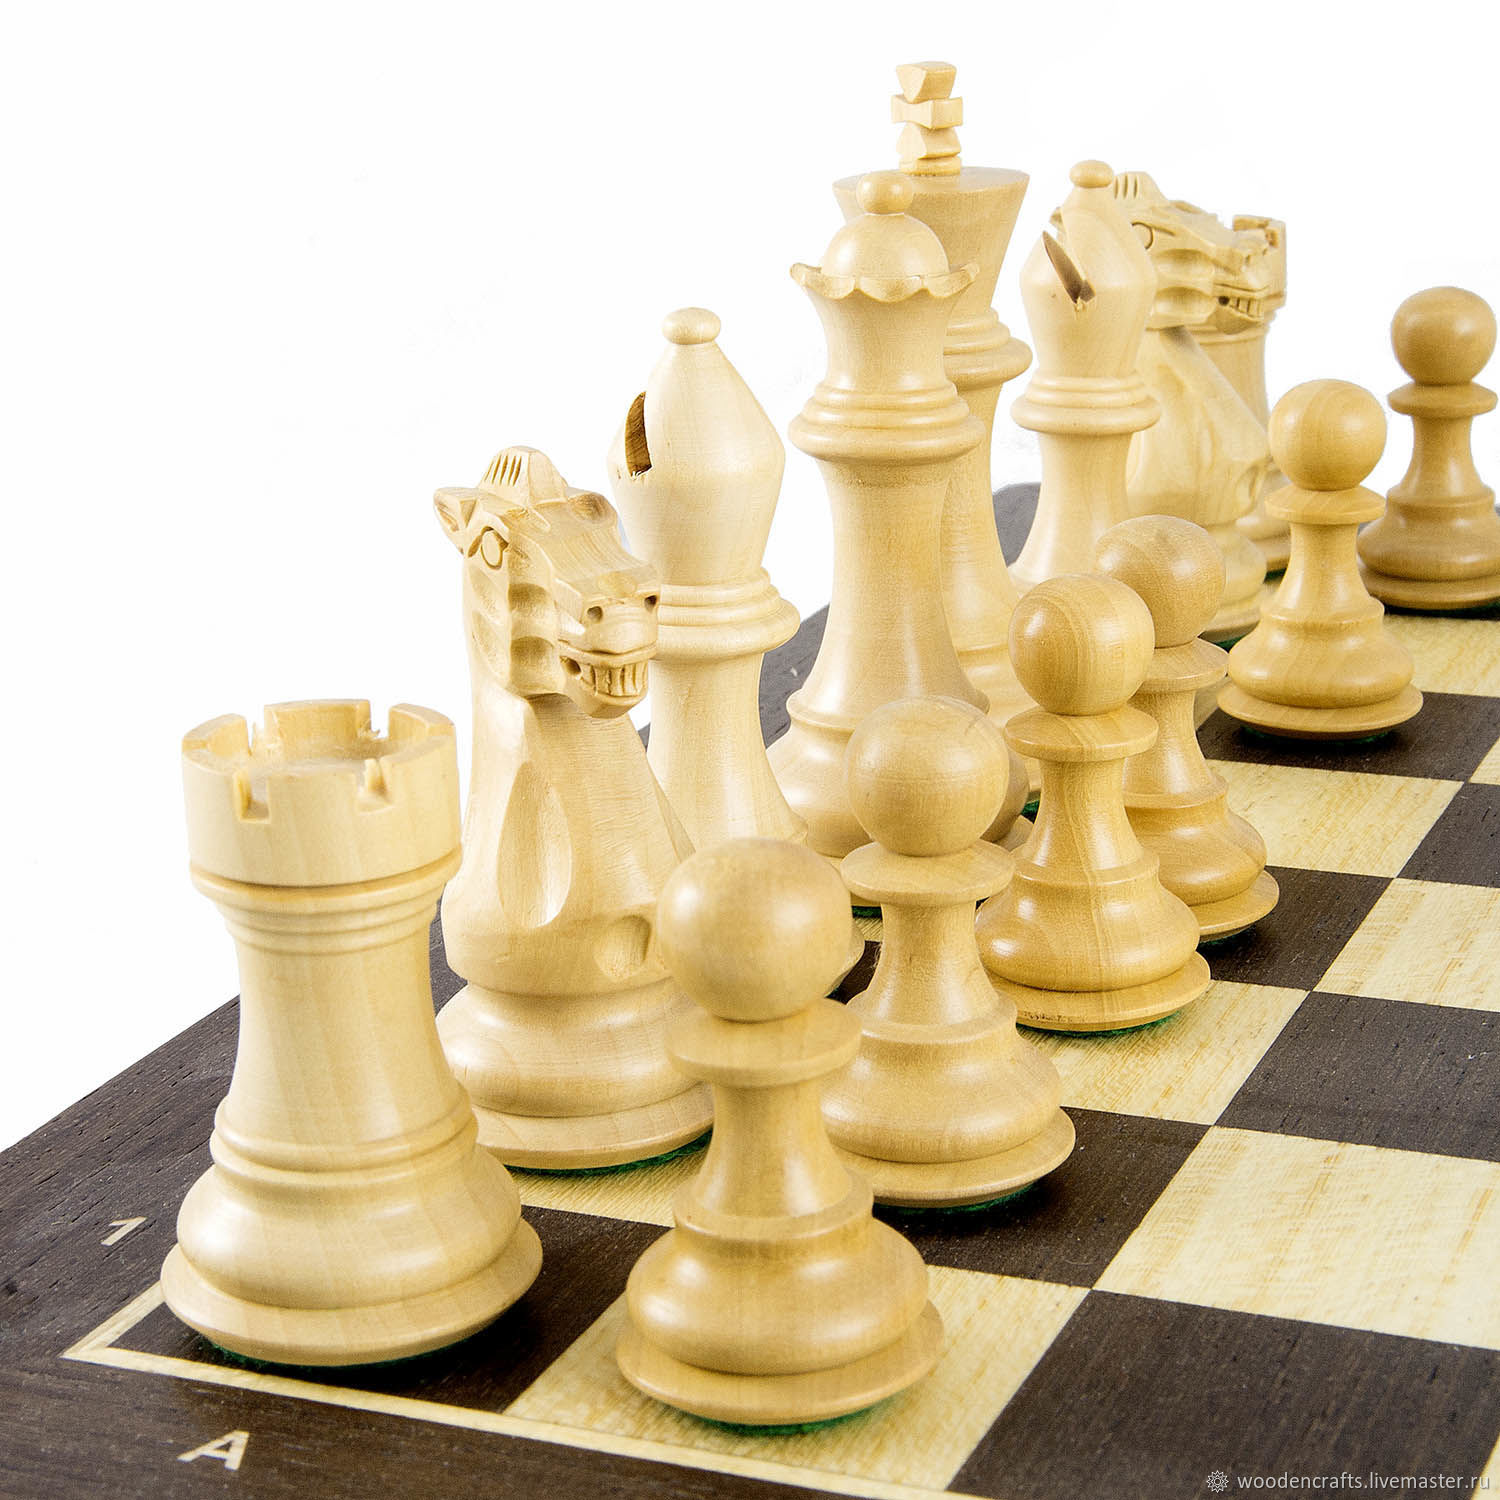 Fide chess. Fide шахматы. Шахматы турнирные Fide. Шахматный набор Fide. Шахматы деревянные.